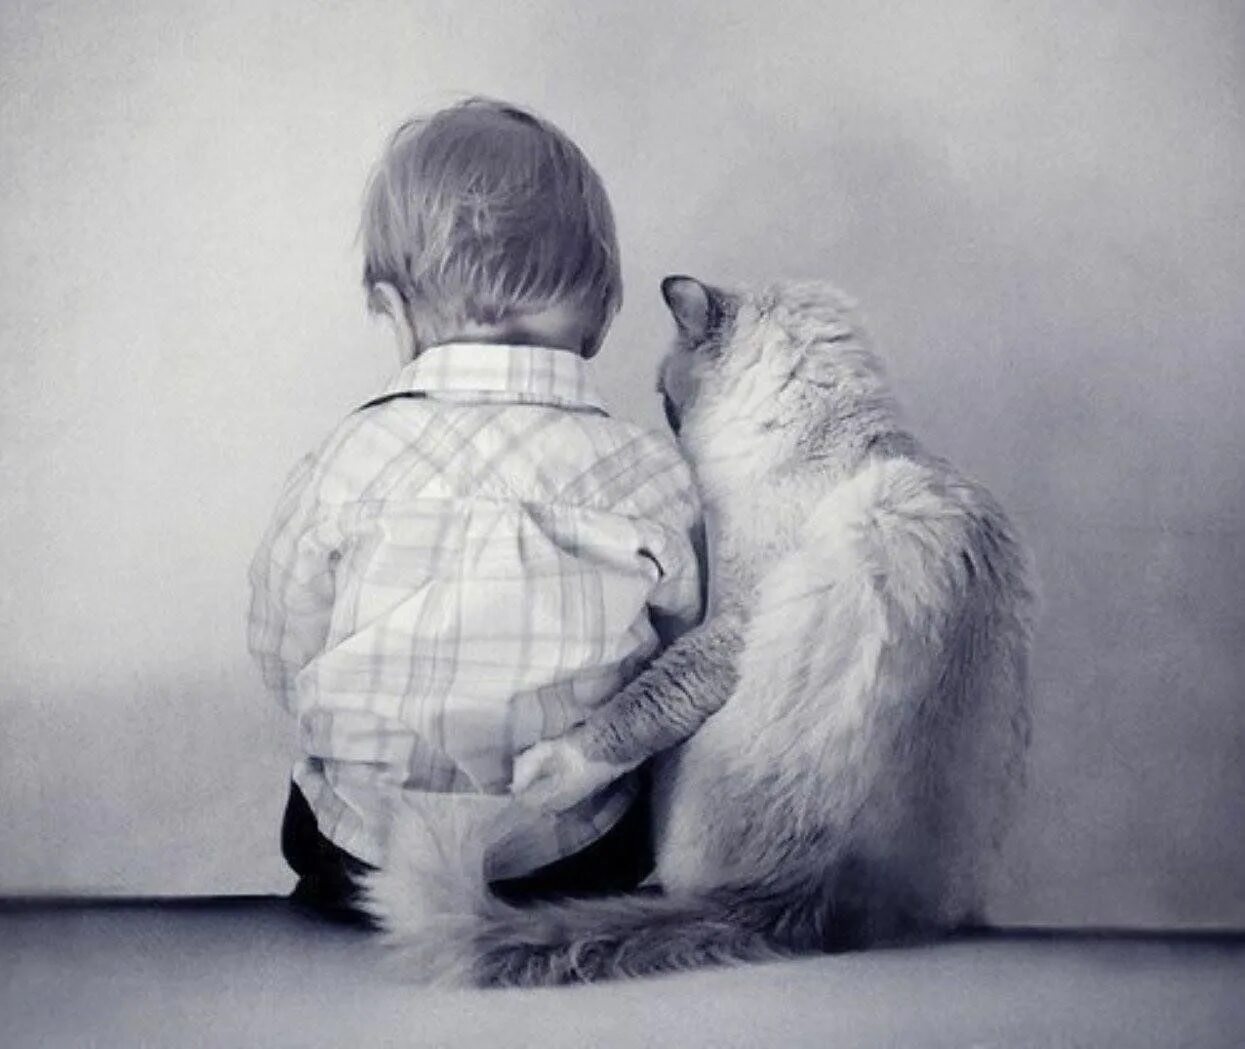 Лучший друг одинокого. Мальчик обнимает кота. Обнимашки людей. Поддержка в трудную минуту. Объятия животных.